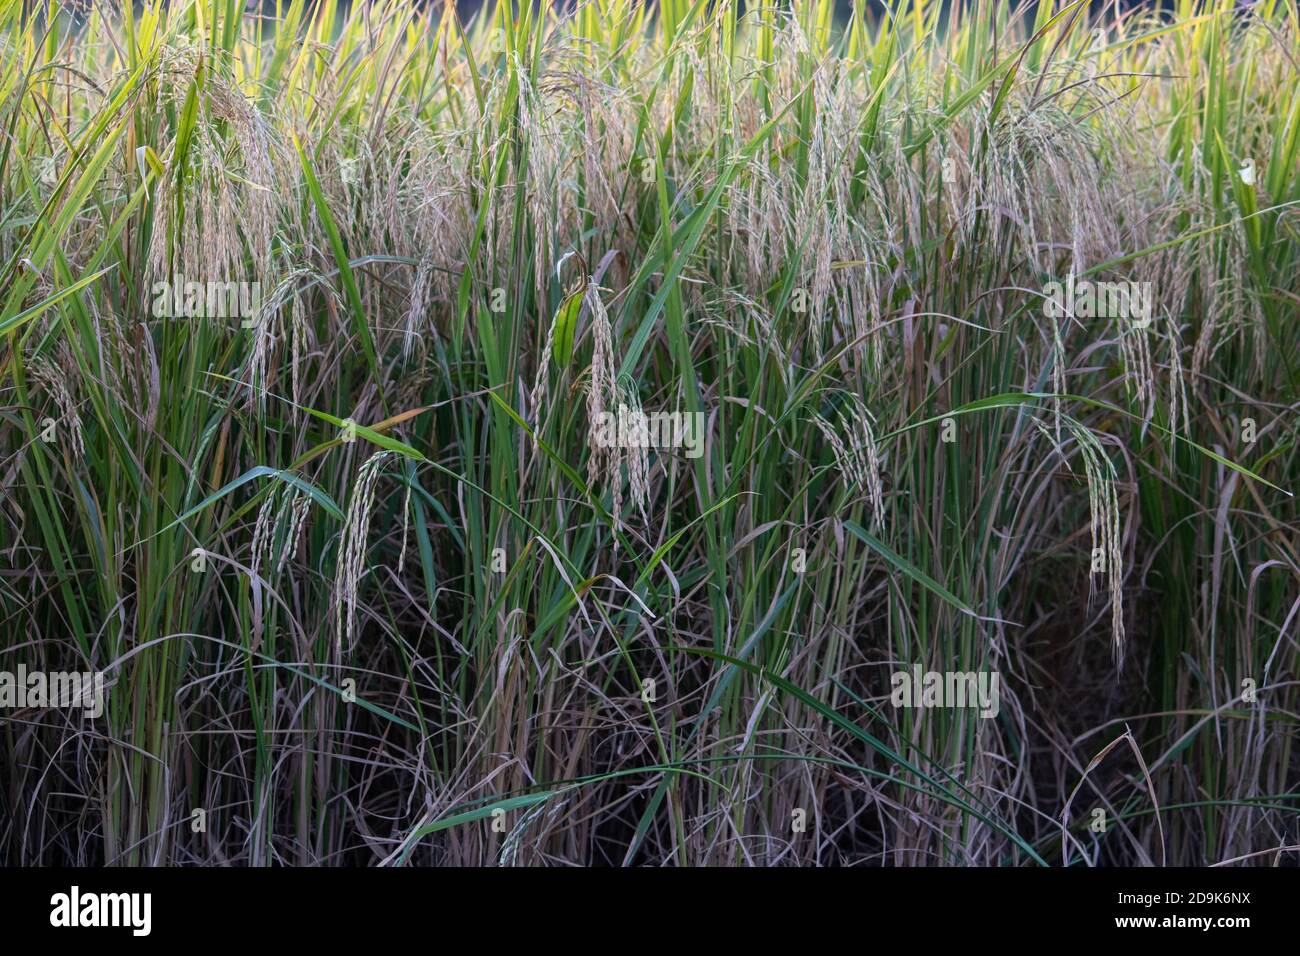 Campo di raccolto di Paddy in India. L'India è uno dei più grandi produttori di riso al mondo, tra cui riso bianco e riso bruno, foto di alta qualità Foto Stock